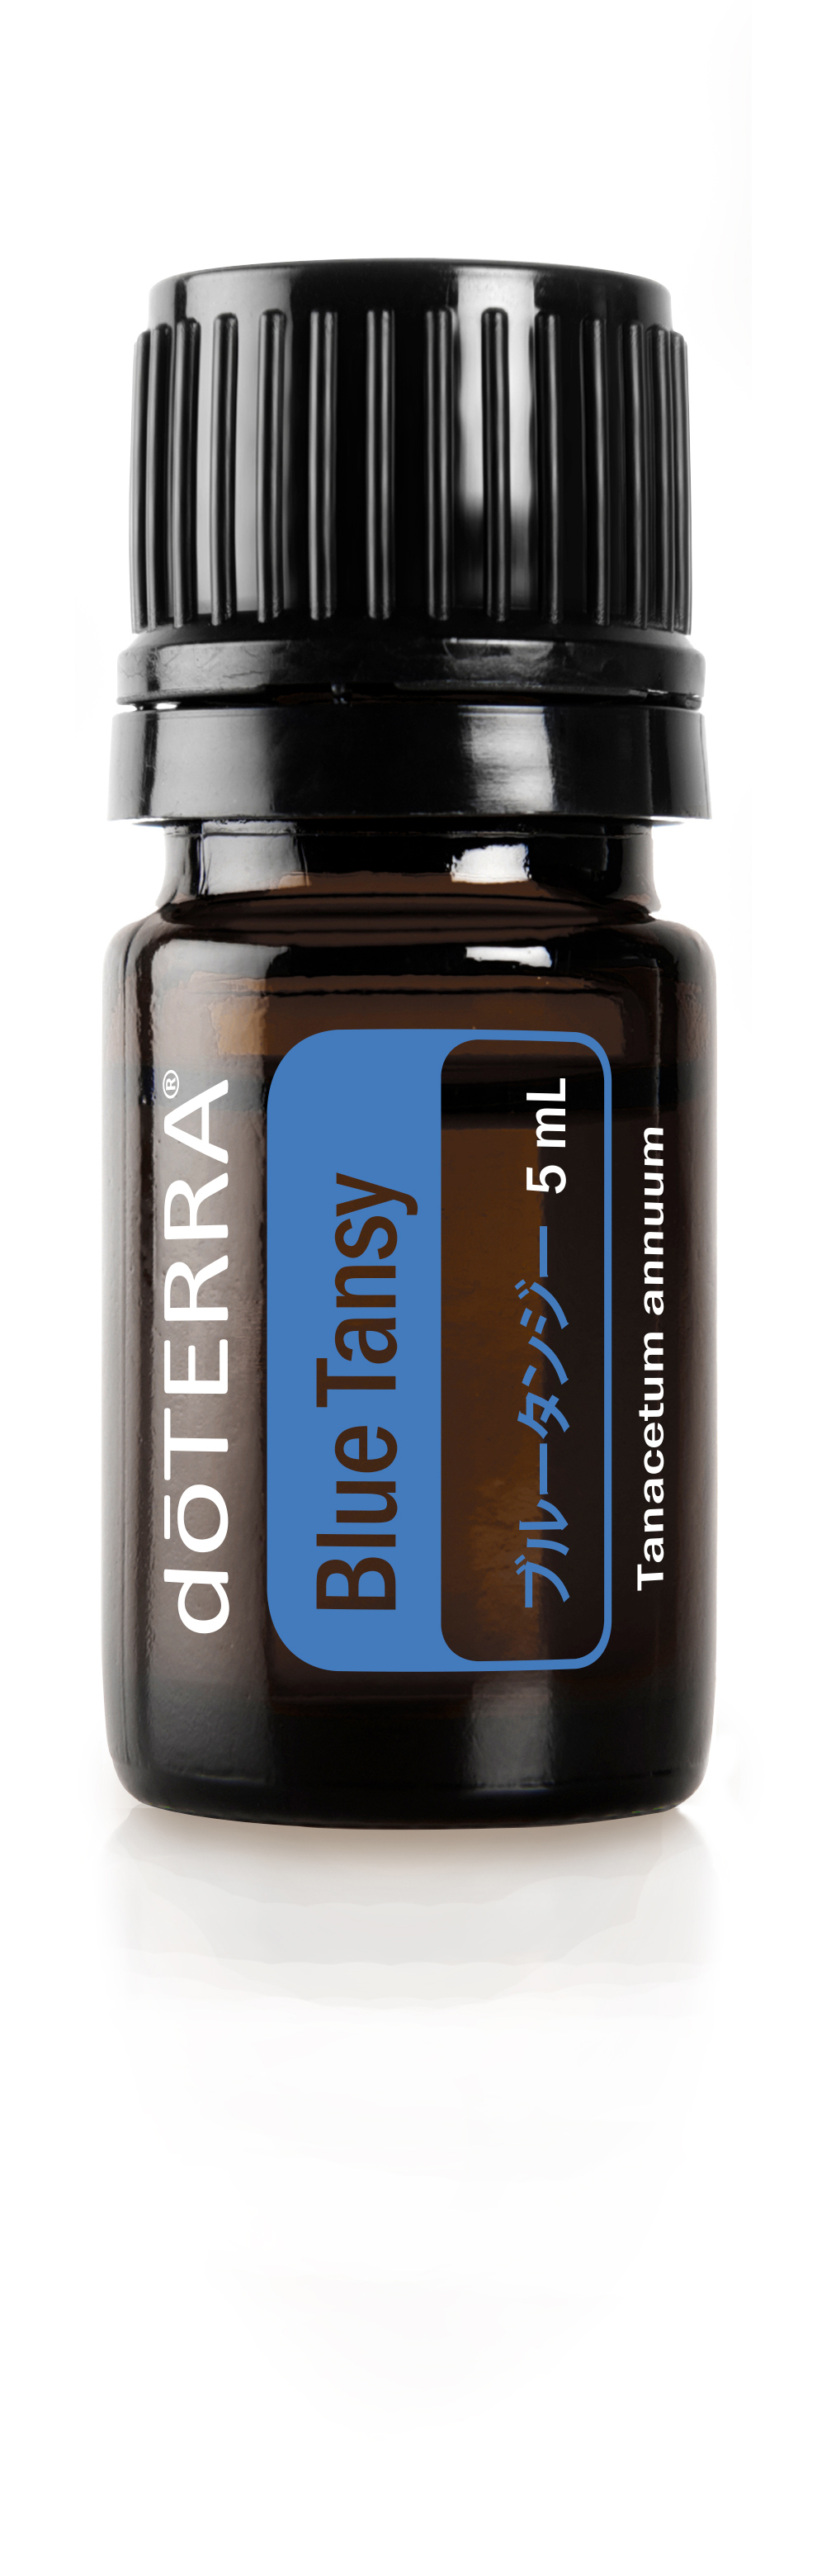 ブルータンジー | doTERRA Essential Oils